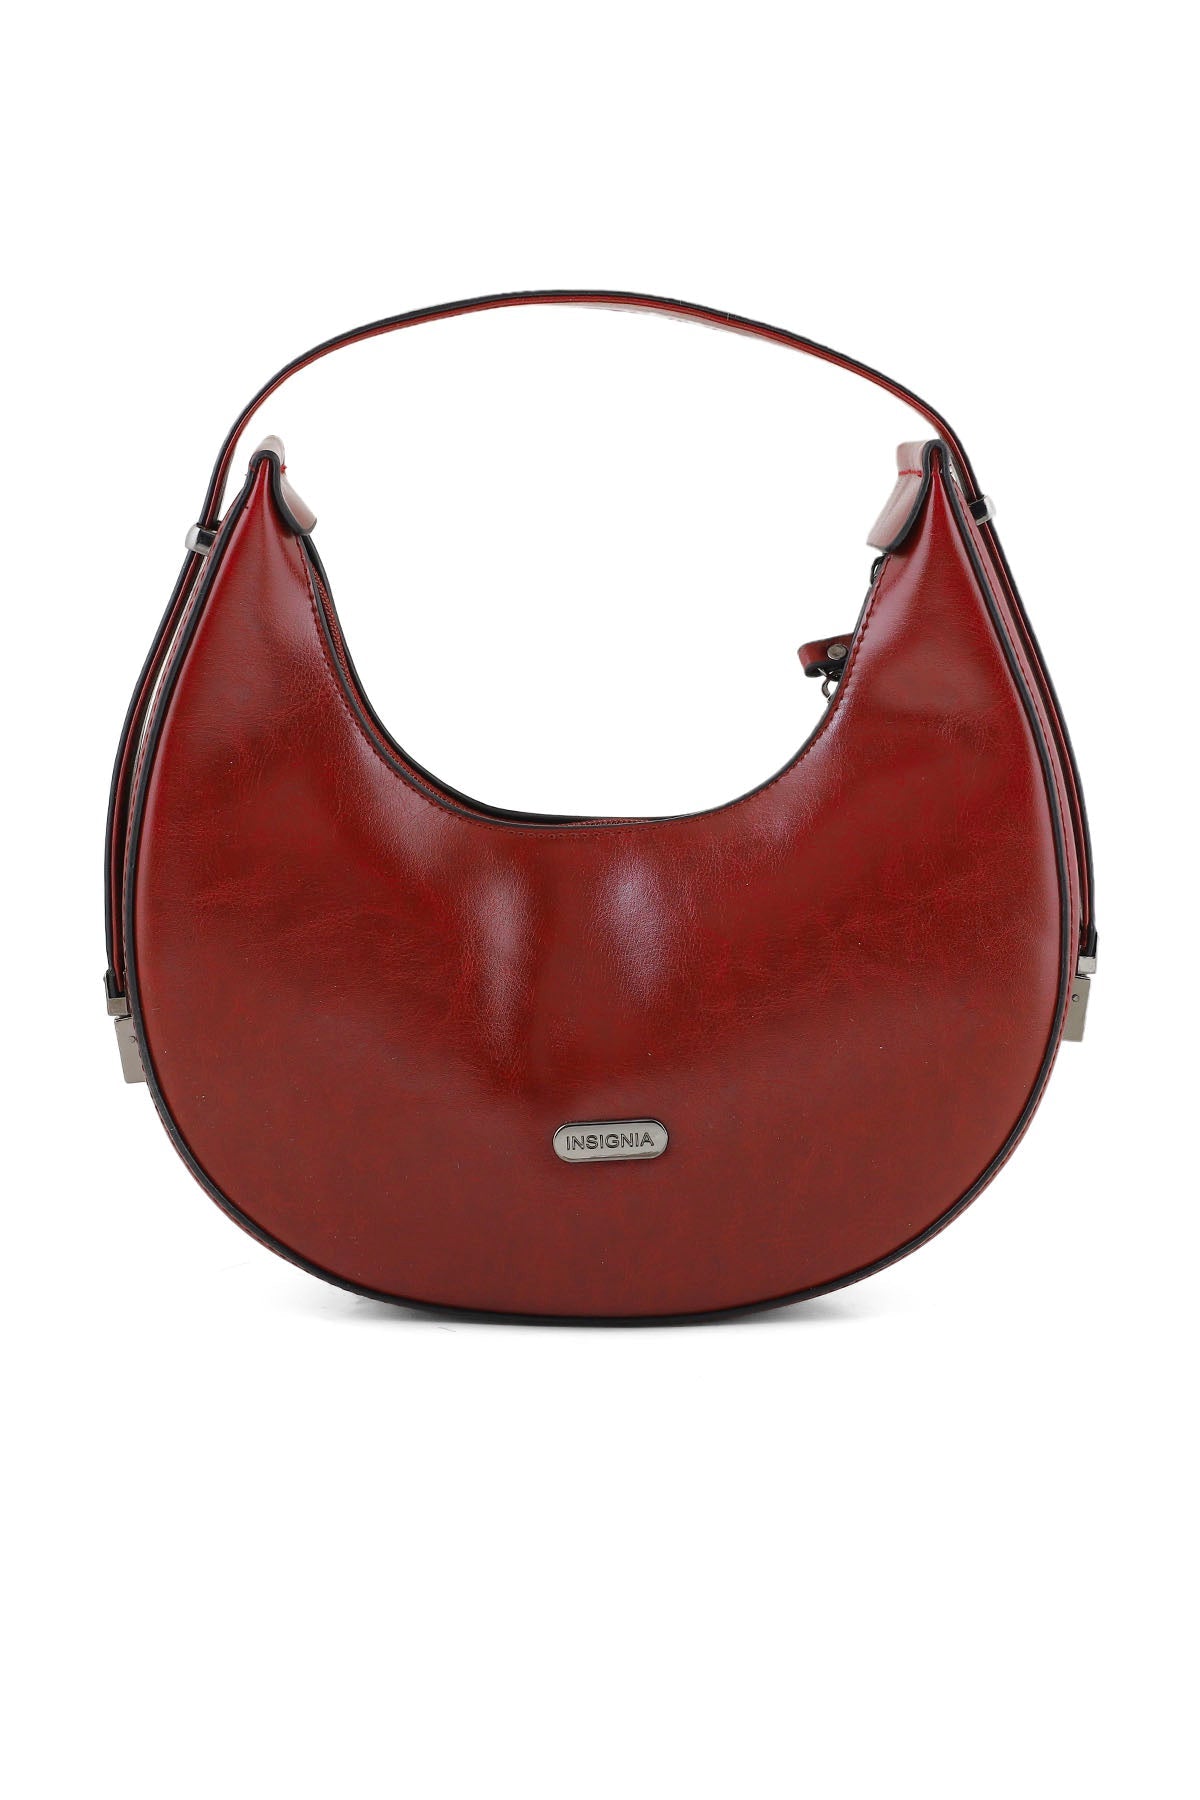 Hobo Hand Bags B14981-Red